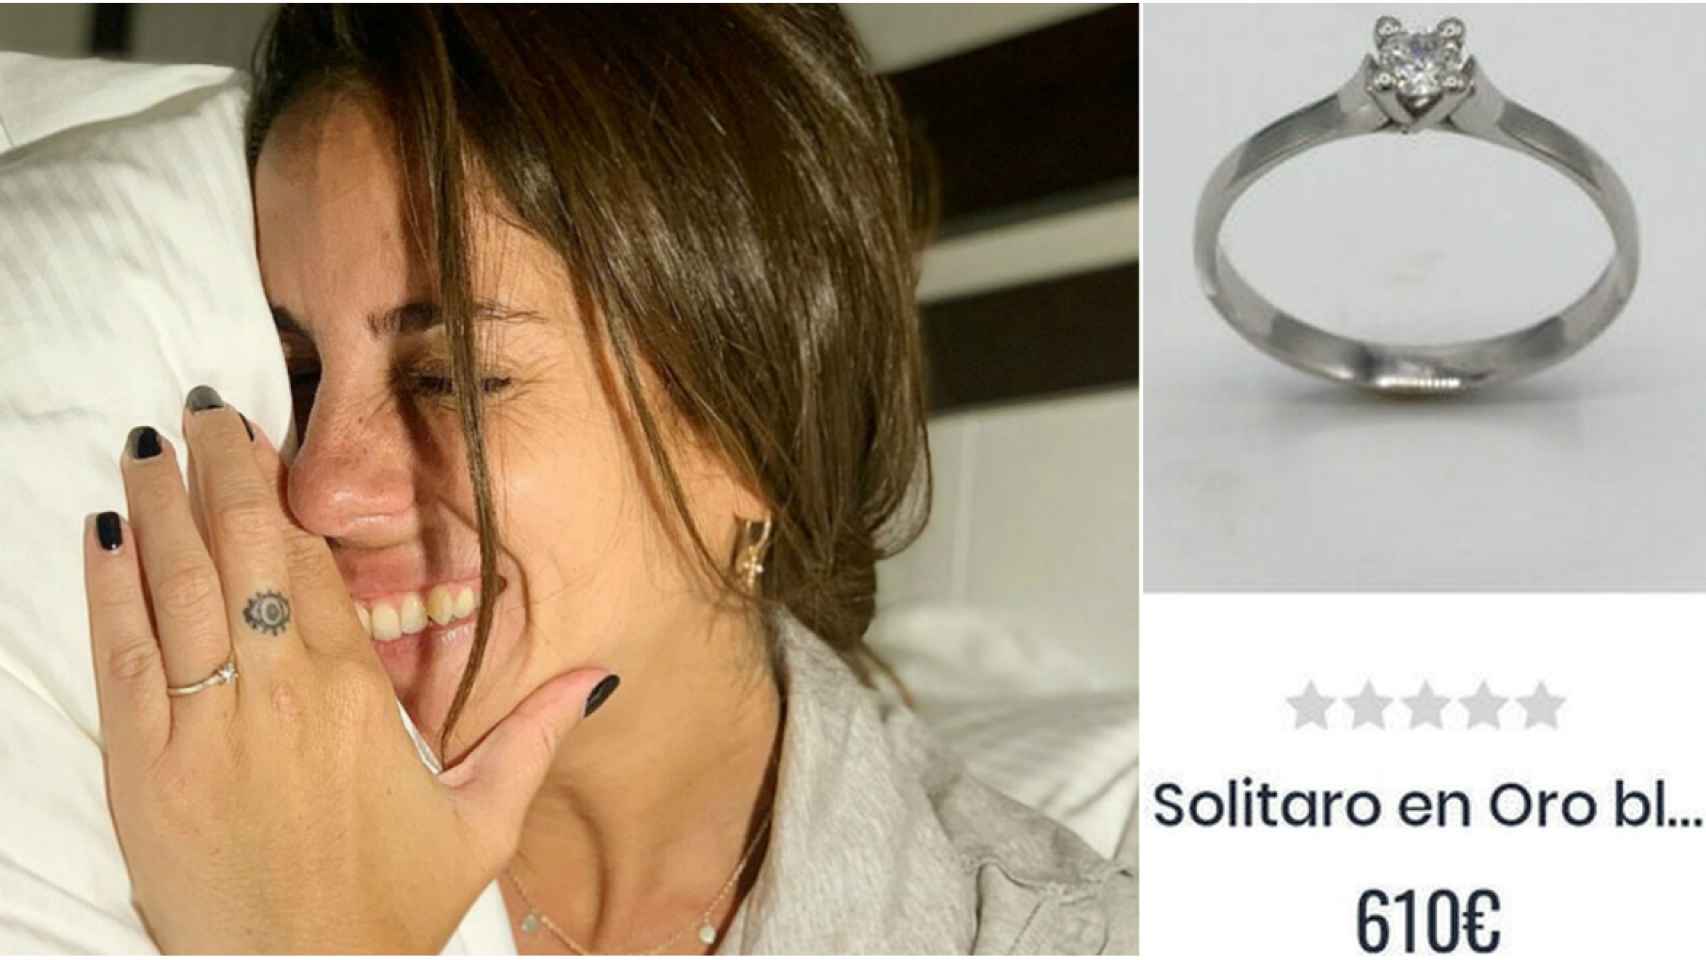 Anabel posa con su anillo de compromiso valorado en 610 euros.